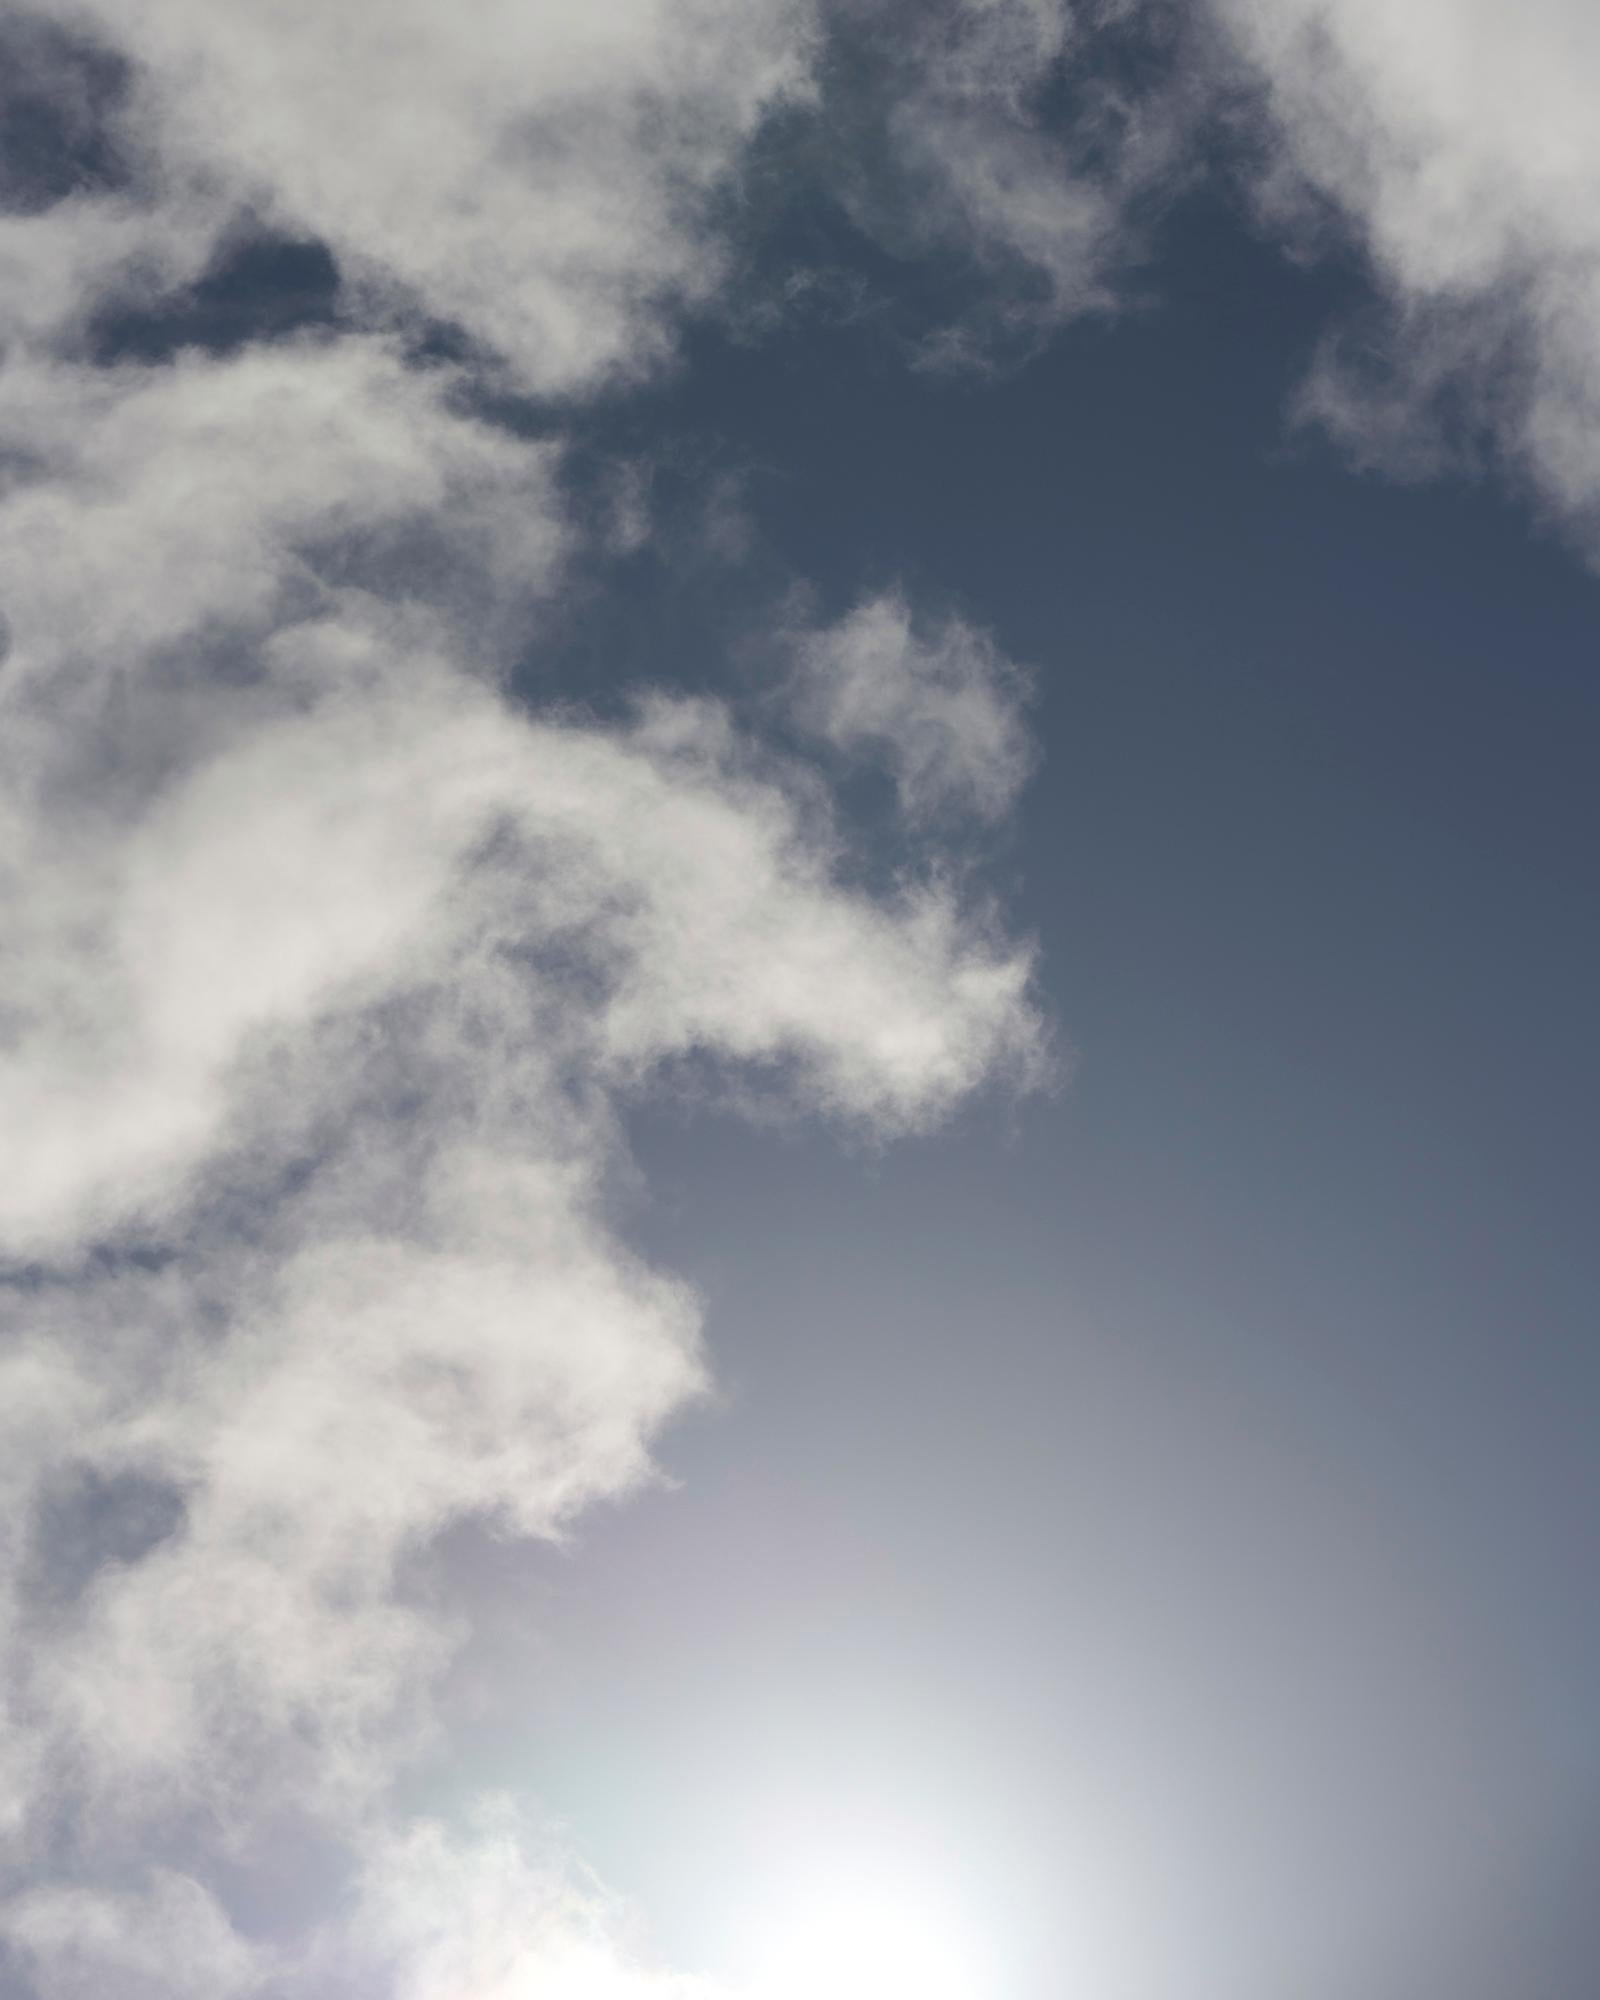 Cloud Study V – großformatige Fotografie dramatischer Wolkenlandschaften im Sommerhimmel – Photograph von Frank Schott